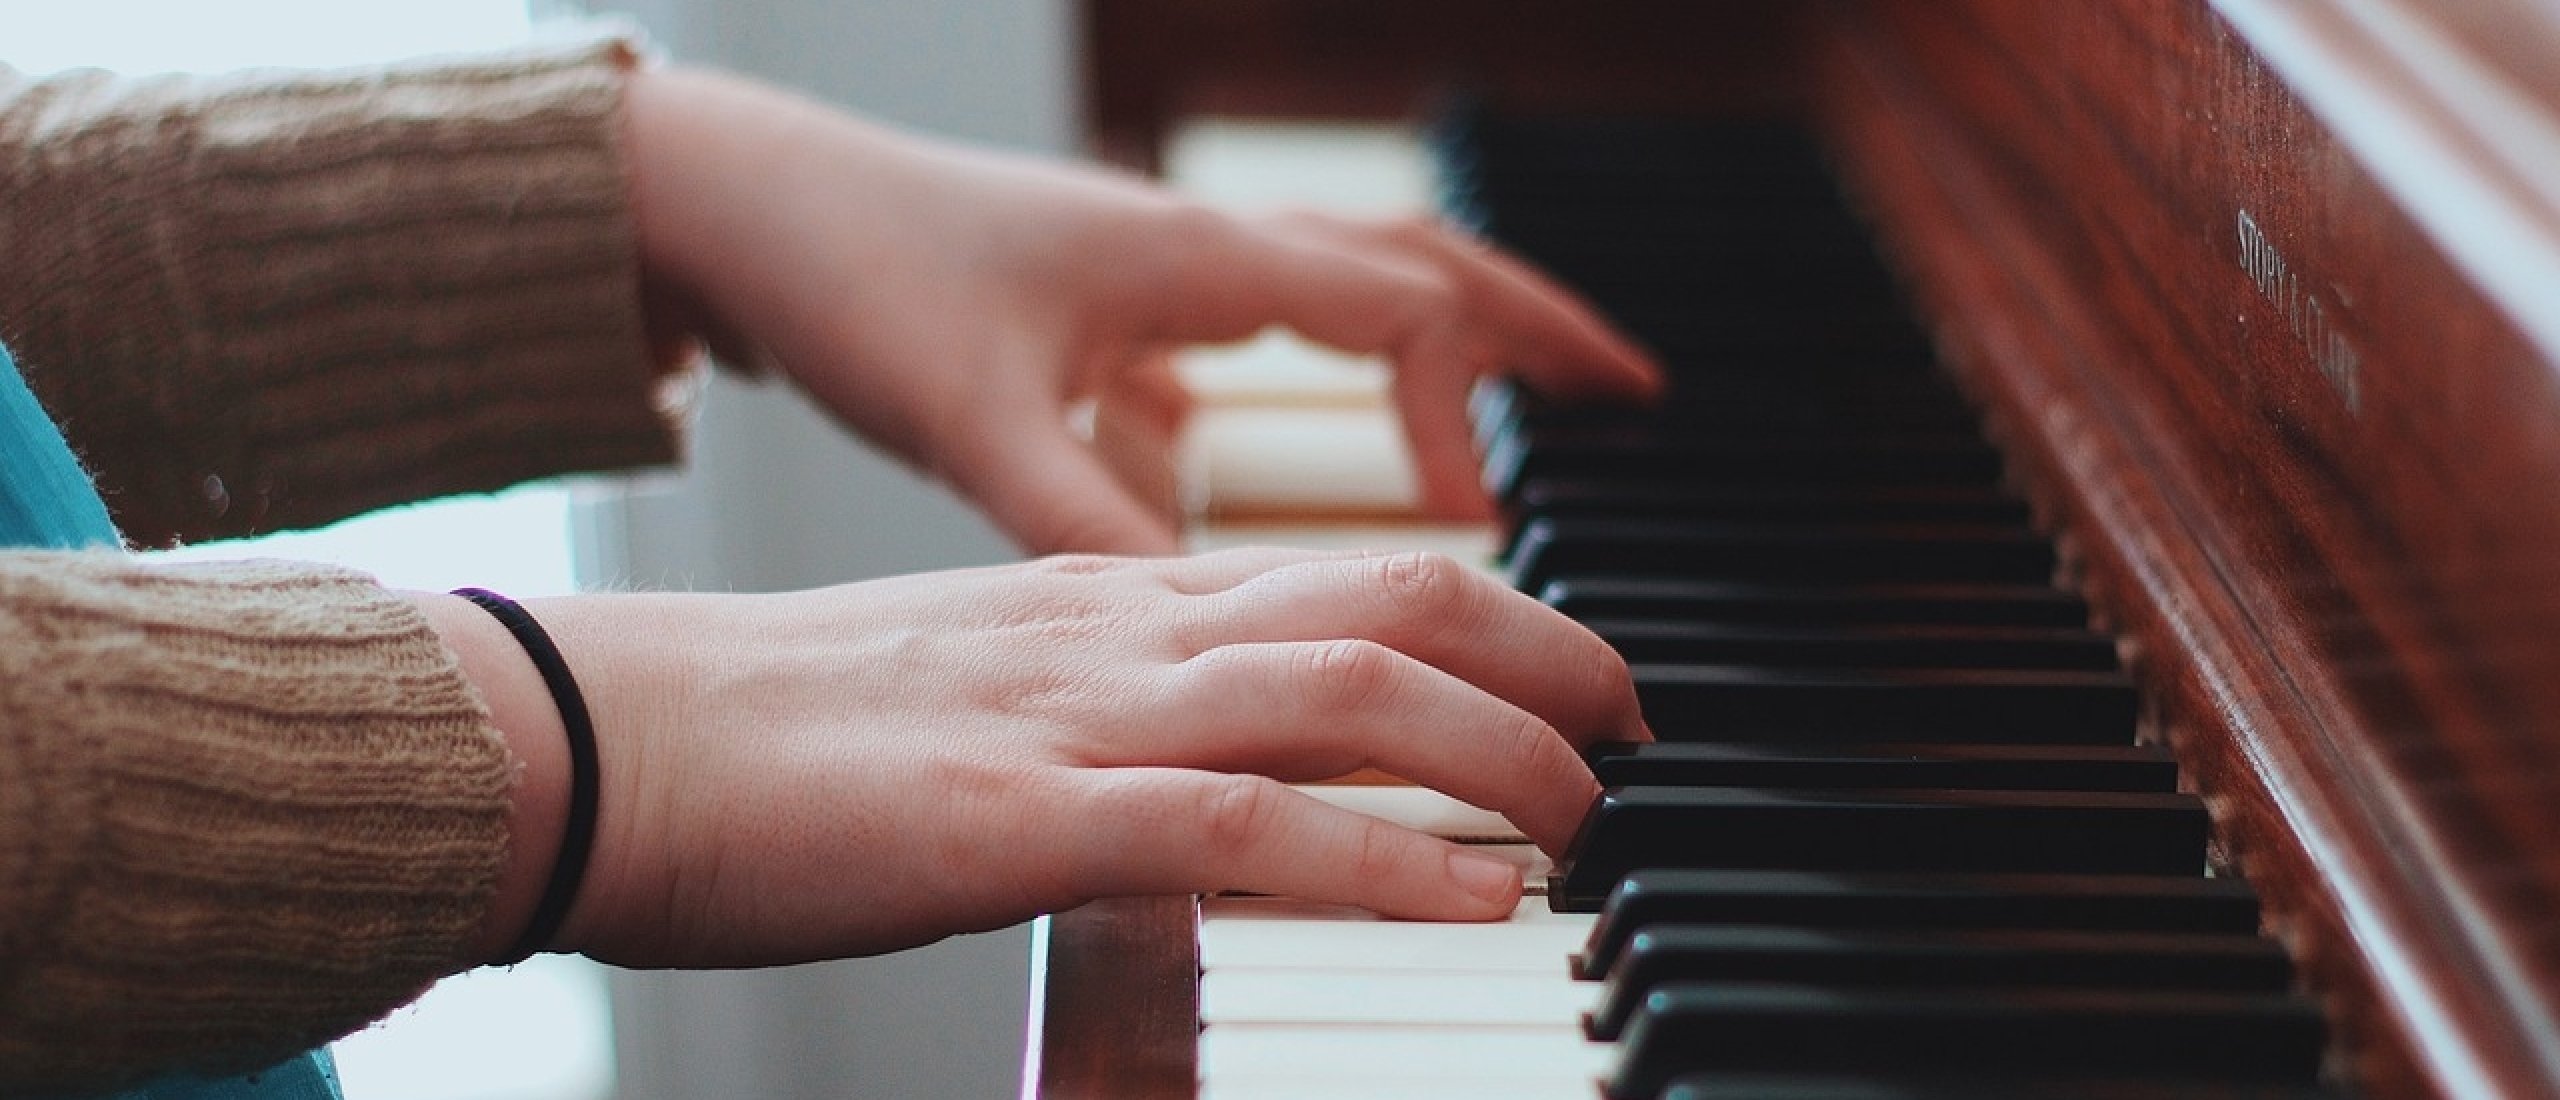 piano met hands